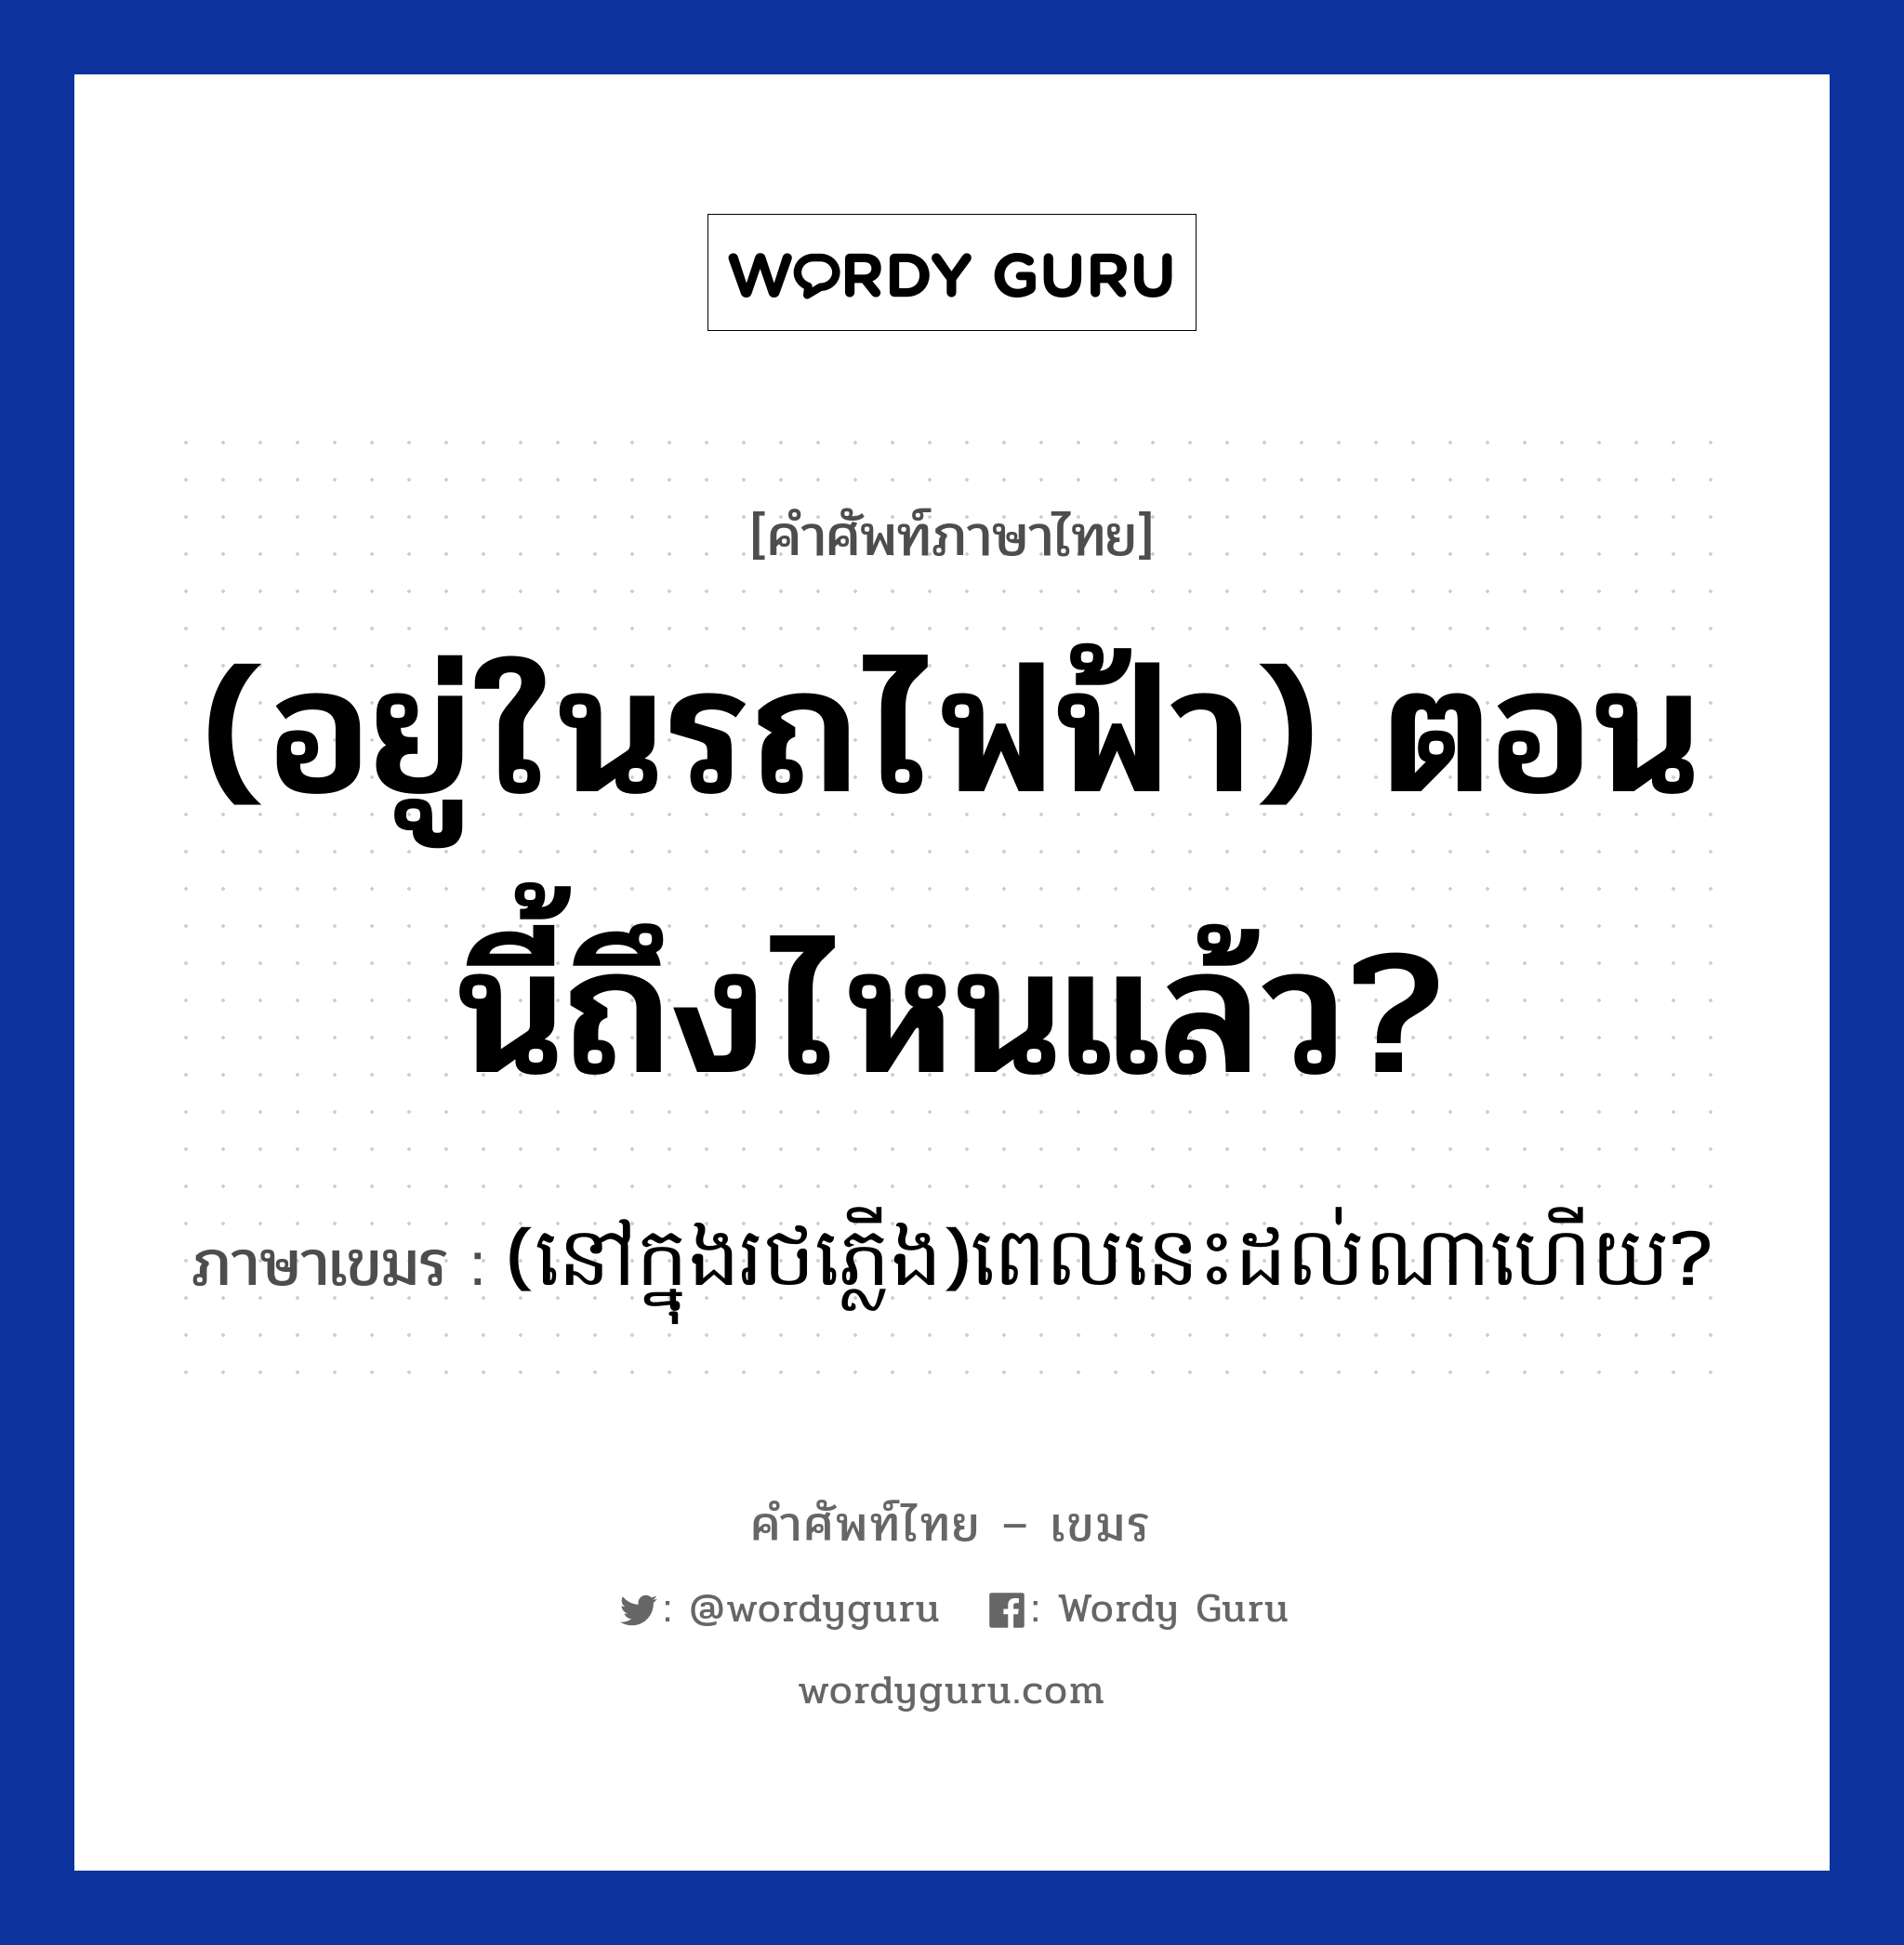 (อยู่ในรถไฟฟ้า) ตอนนี้ถึงไหนแล้ว? ภาษาเขมรคืออะไร, คำศัพท์ภาษาไทย - เขมร (อยู่ในรถไฟฟ้า) ตอนนี้ถึงไหนแล้ว? ภาษาเขมร (នៅក្នុងរថភ្លេីង)ពេលនេះដល់ណាហេីយ? หมวด การเดินทาง (novknongrotplerng)Pelnis dol na hery? หมวด การเดินทาง